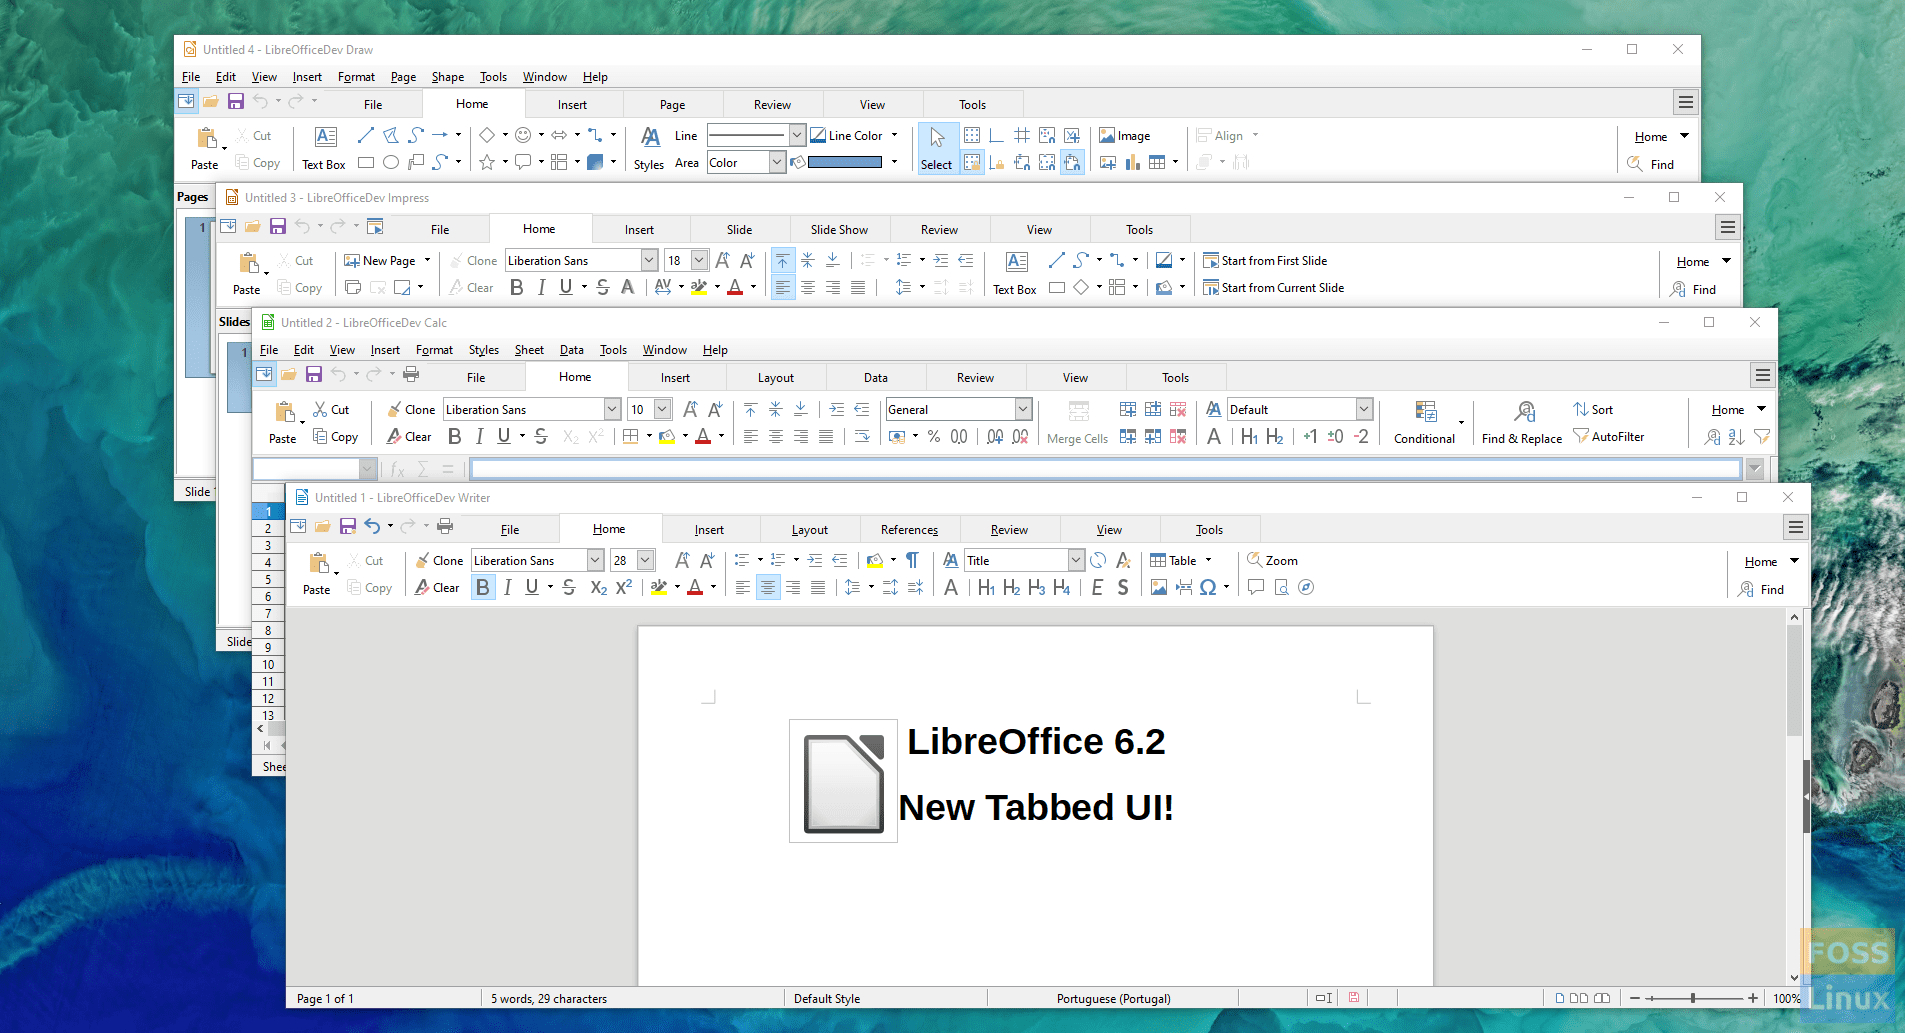 LibreOffice v6.1 Notebookbar